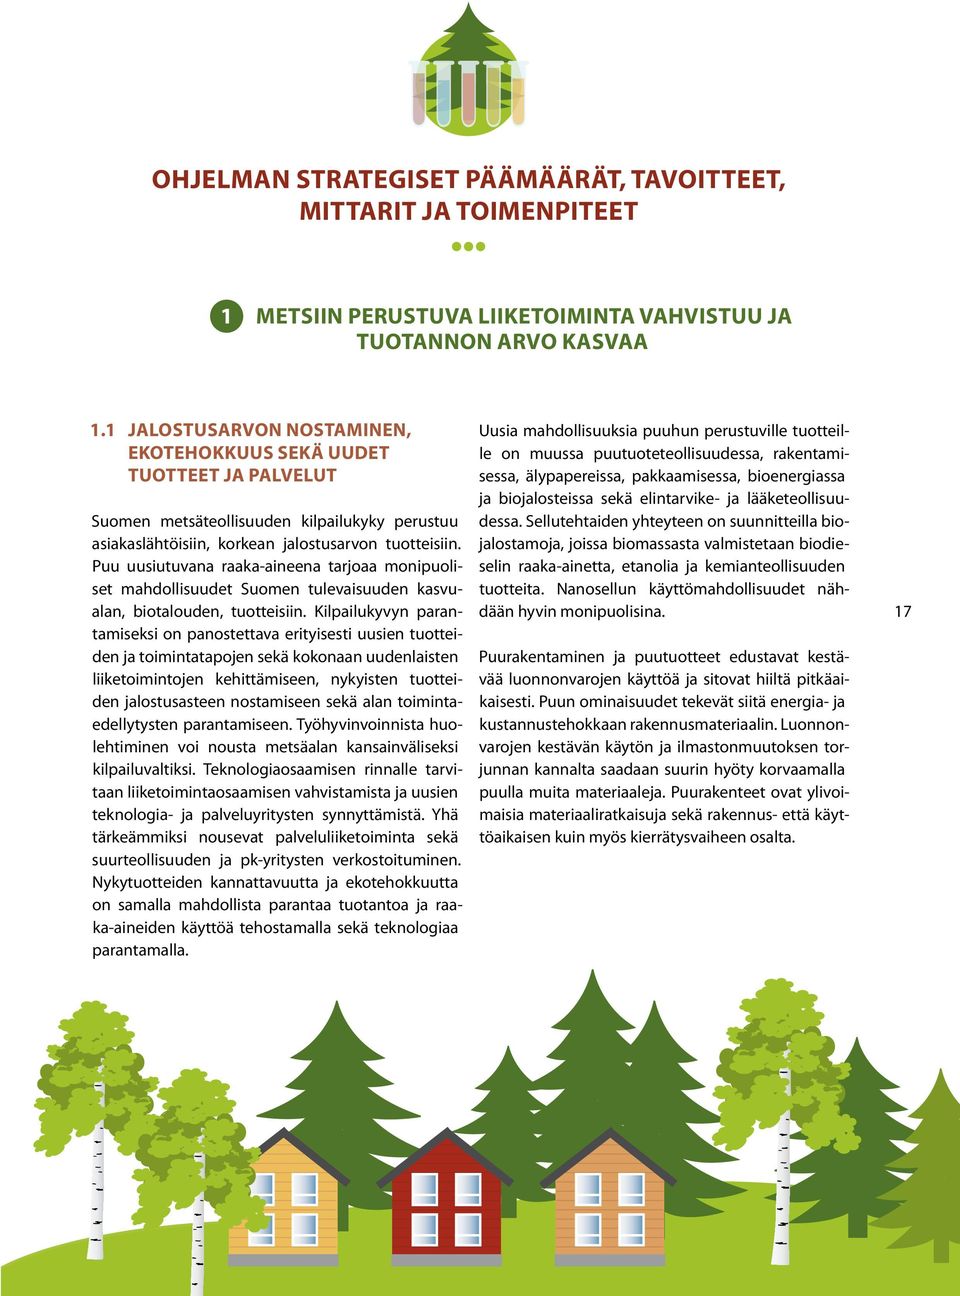 Puu uusiutuvana raaka-aineena tarjoaa monipuoliset mahdollisuudet Suomen tulevaisuuden kasvualan, biotalouden, tuotteisiin.